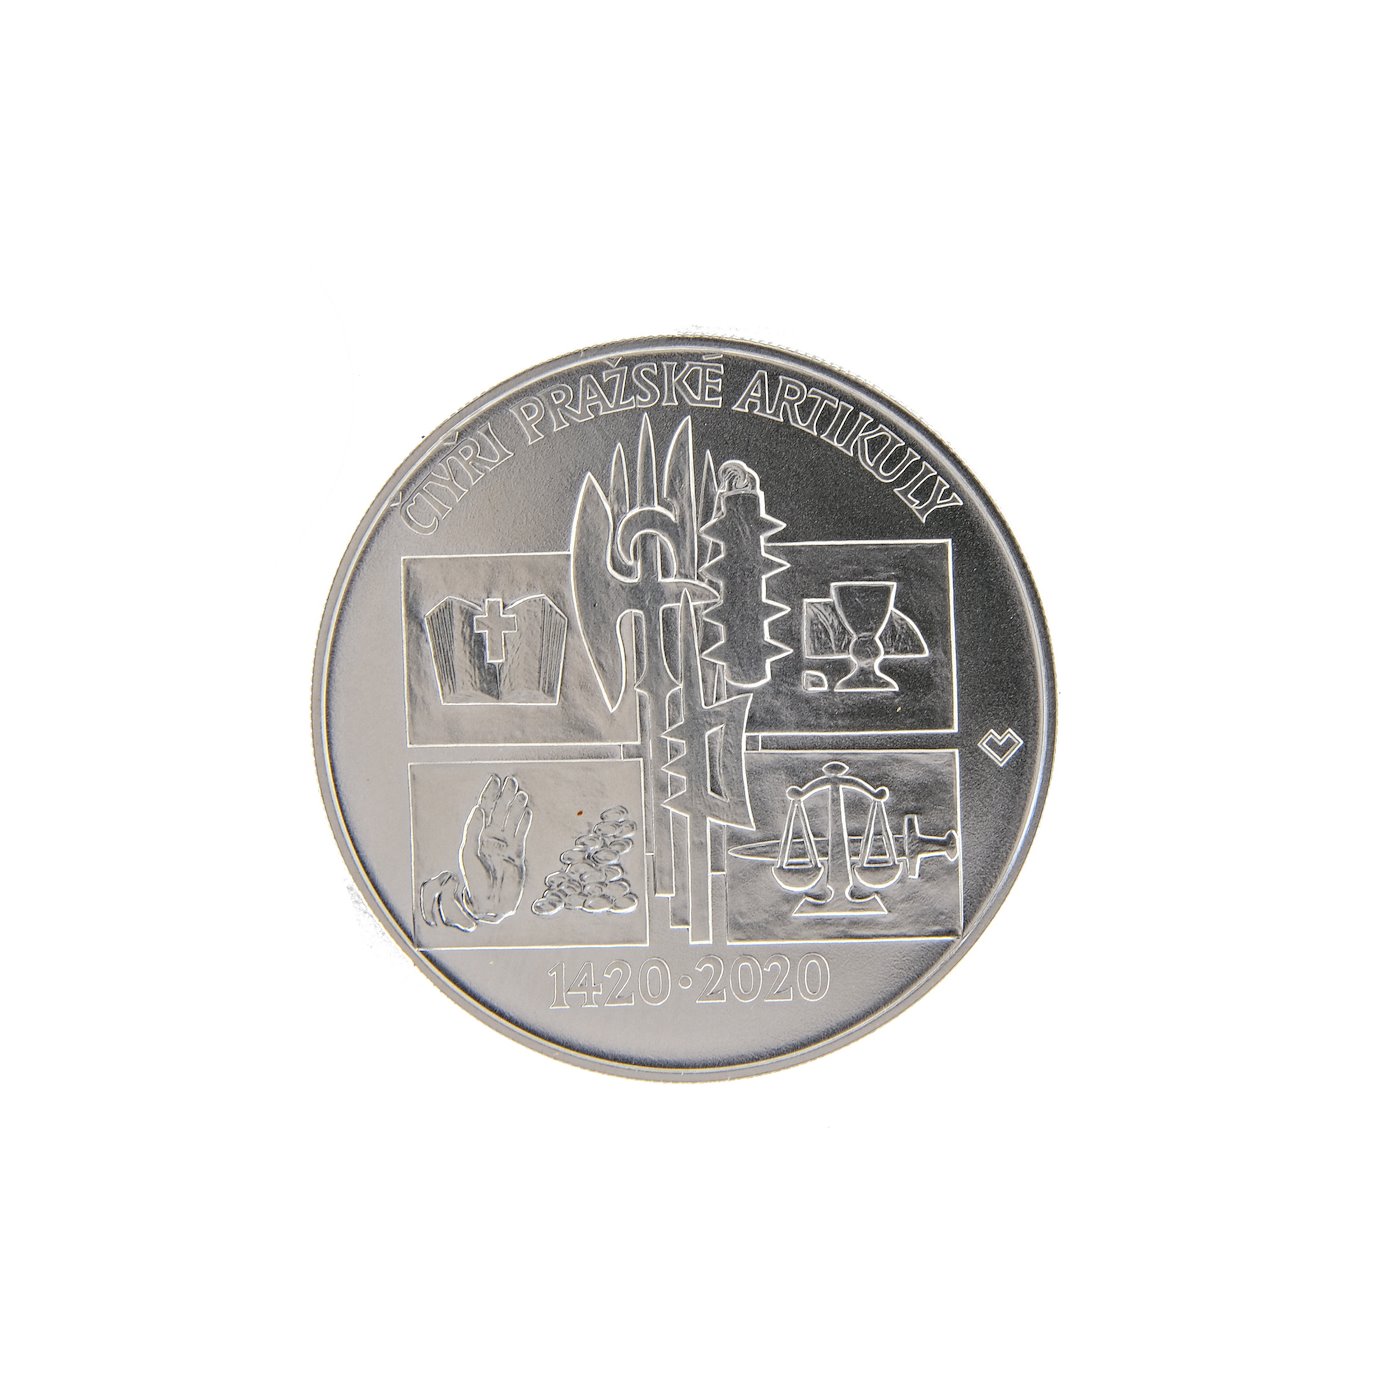 Mince - Konvolut 4 stříbrných investičních mincí, stříbro 2x 925/1000, 2x 900/1000. Hrubá hmotnost 4x 13g